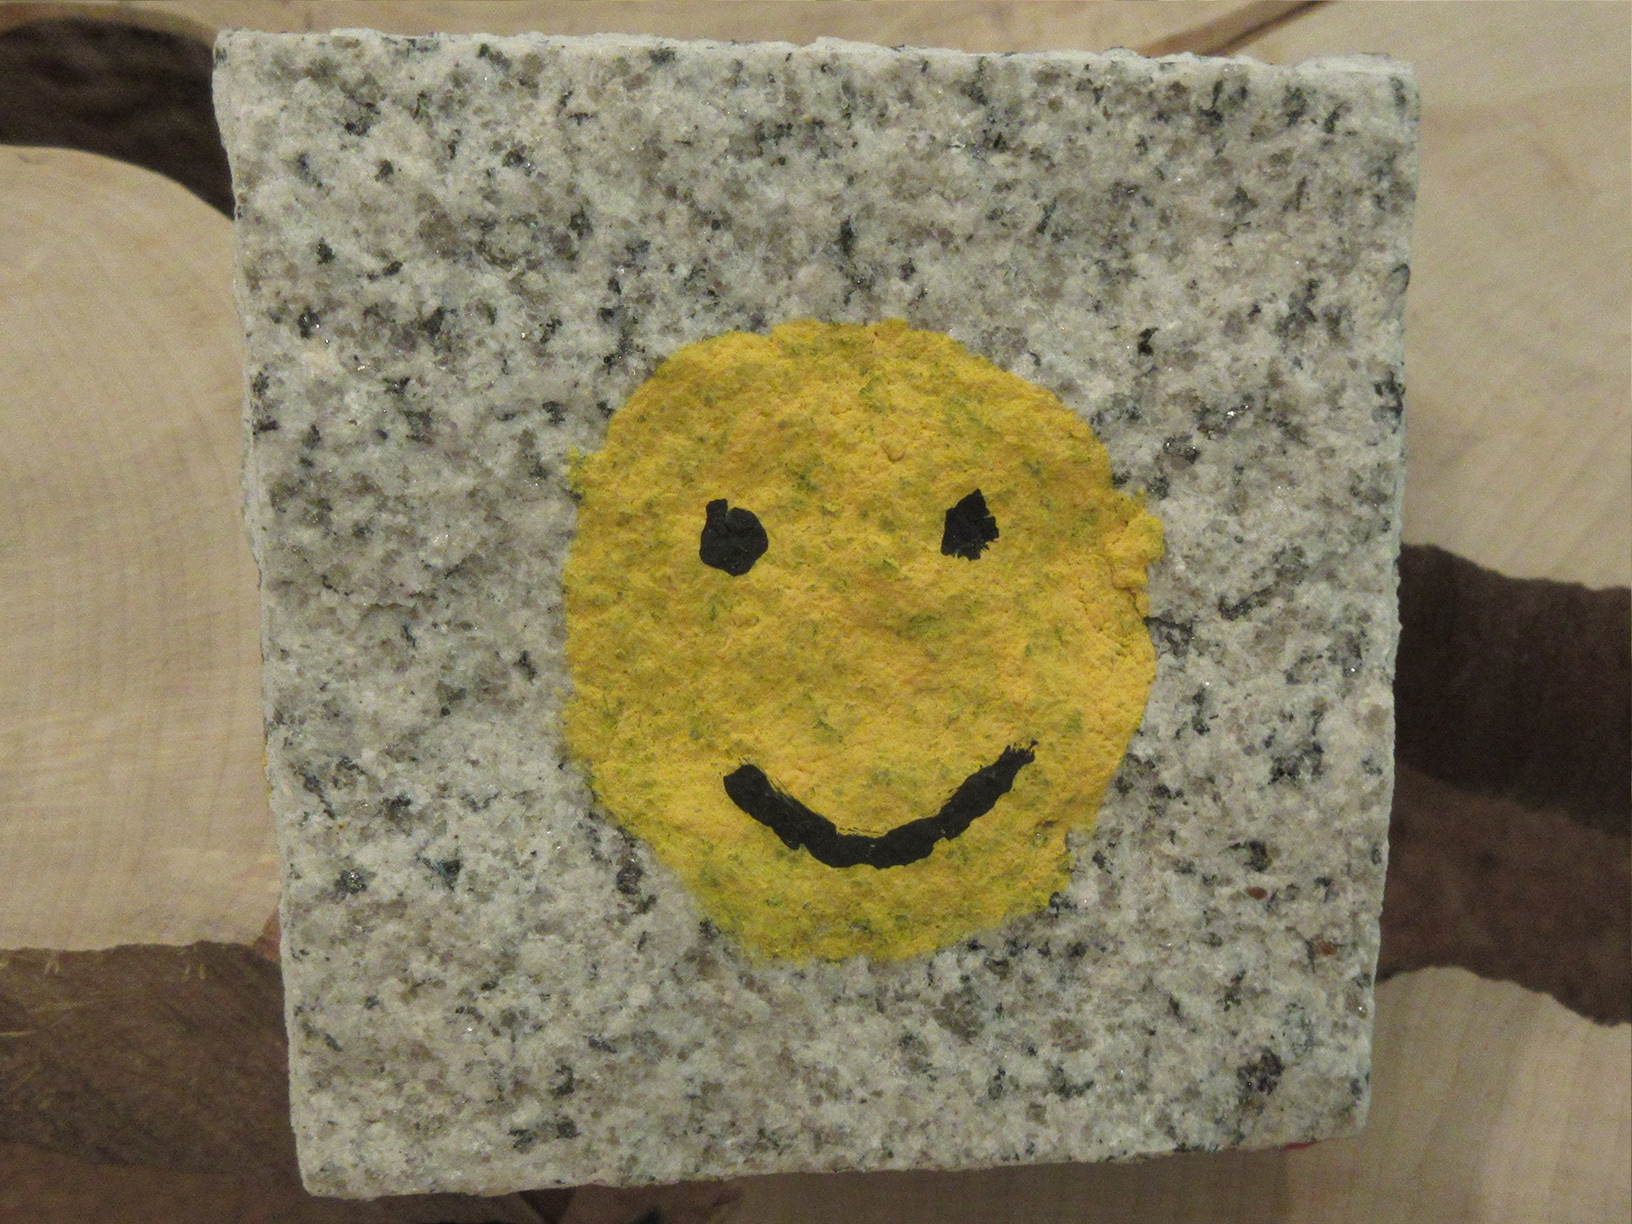 Smileygesicht auf einem Stein